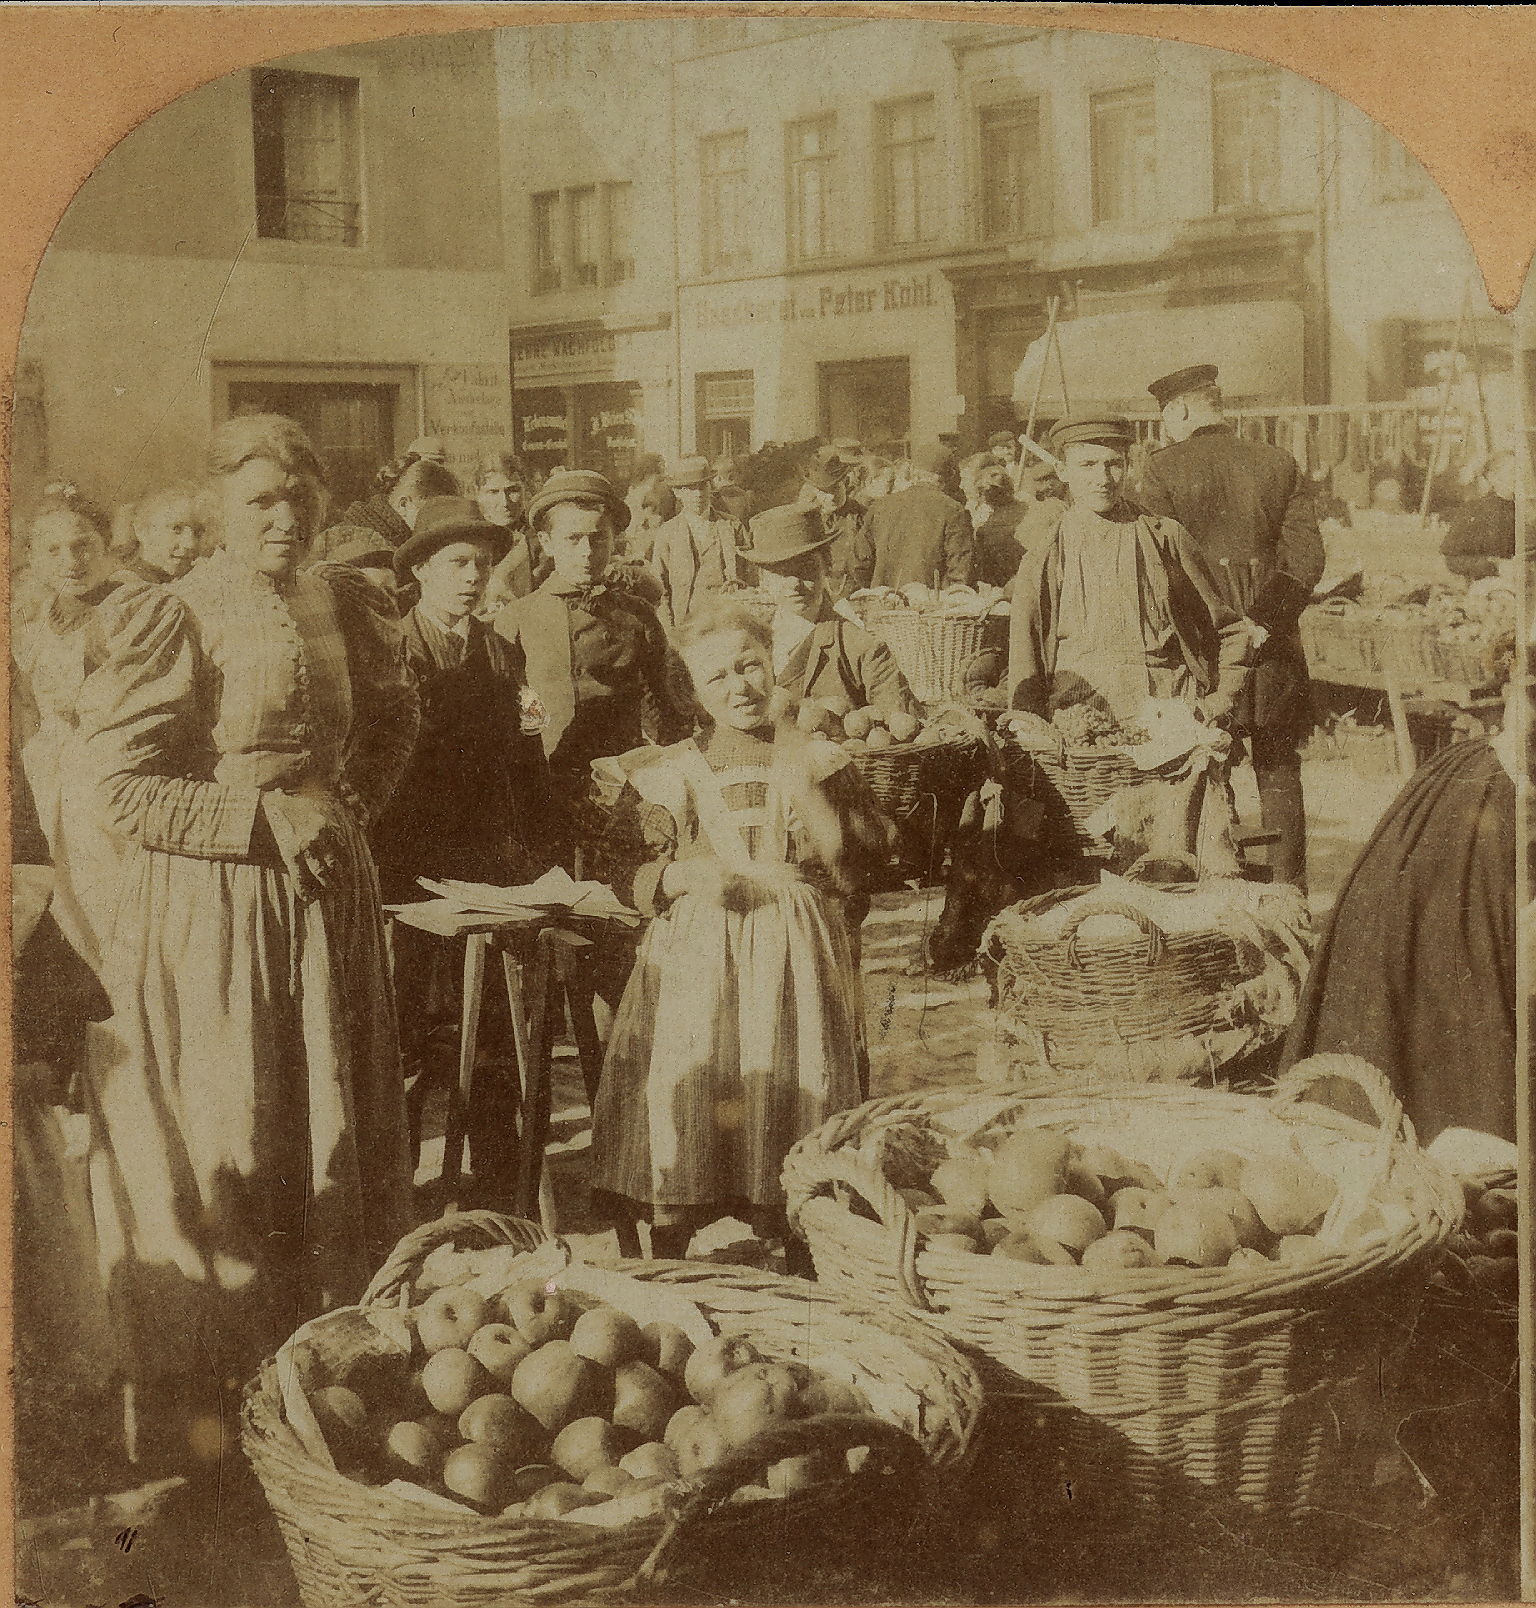 StAK FA 1,60 - An der Liebfrauenkirche Markt vor ULF 1898.jpg